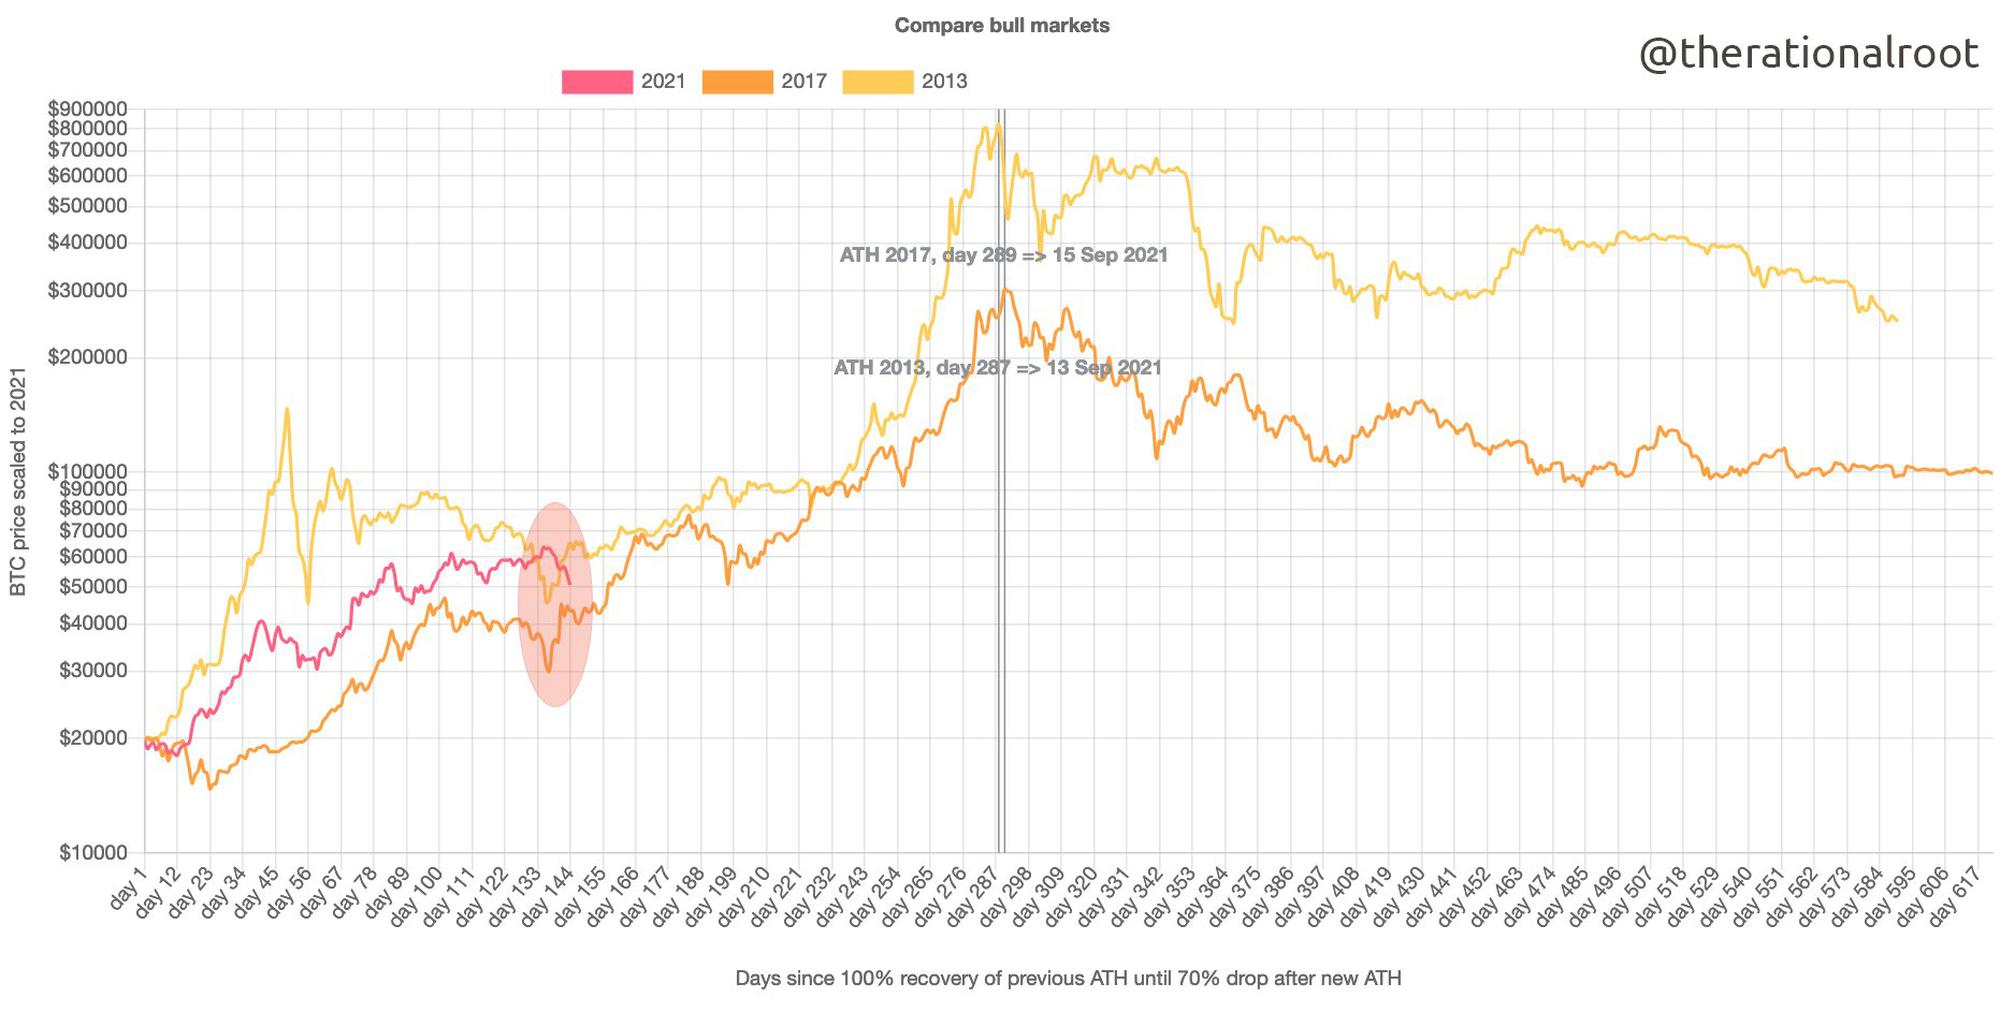 bitcoin price comparison of historical bullruns